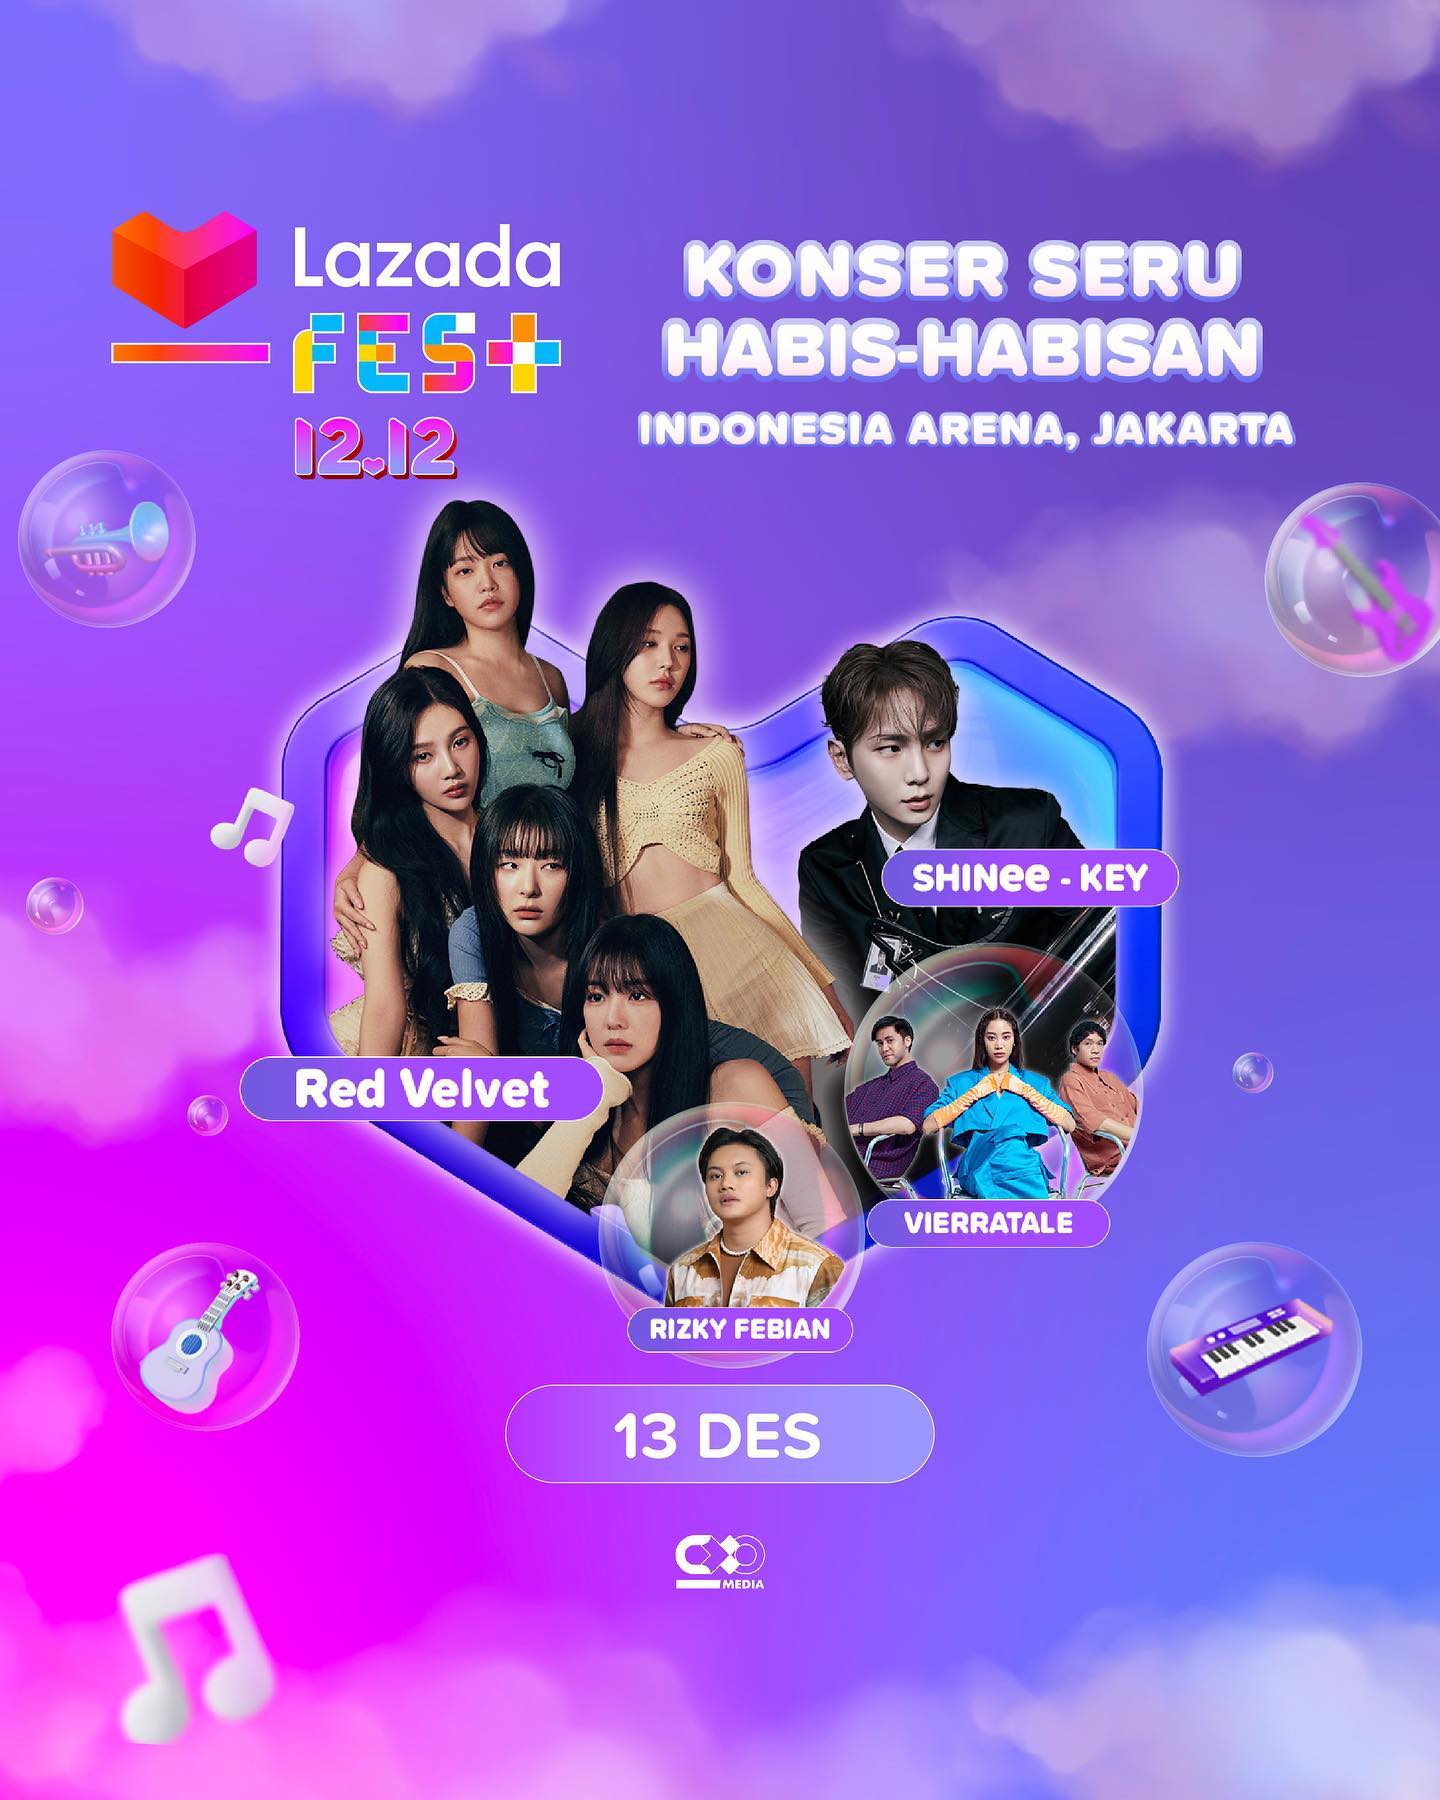 Konser Musik Lazada Fest 12.12 Menggebrak 3 Kota Besar dengan Red Velvet, Isyana, Raisa dan Masih Banyak Lagi